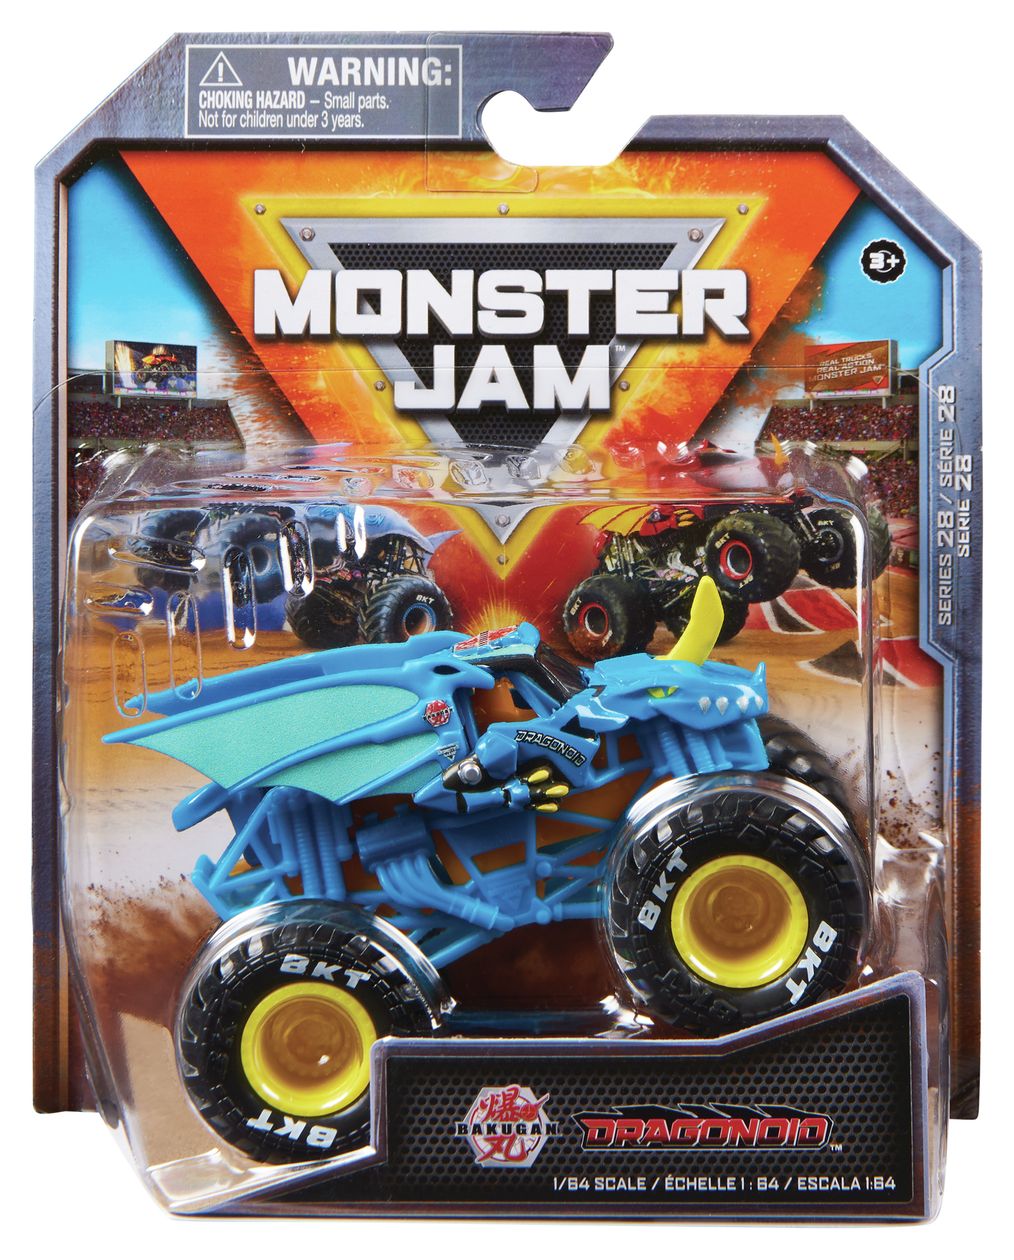 Monster Jam Original Monster Jam Truck mit Stunt-Hindernis im Maßstab 1:64 (Sortierung mit verschiedenen Designs, Zufallsauswahl) 